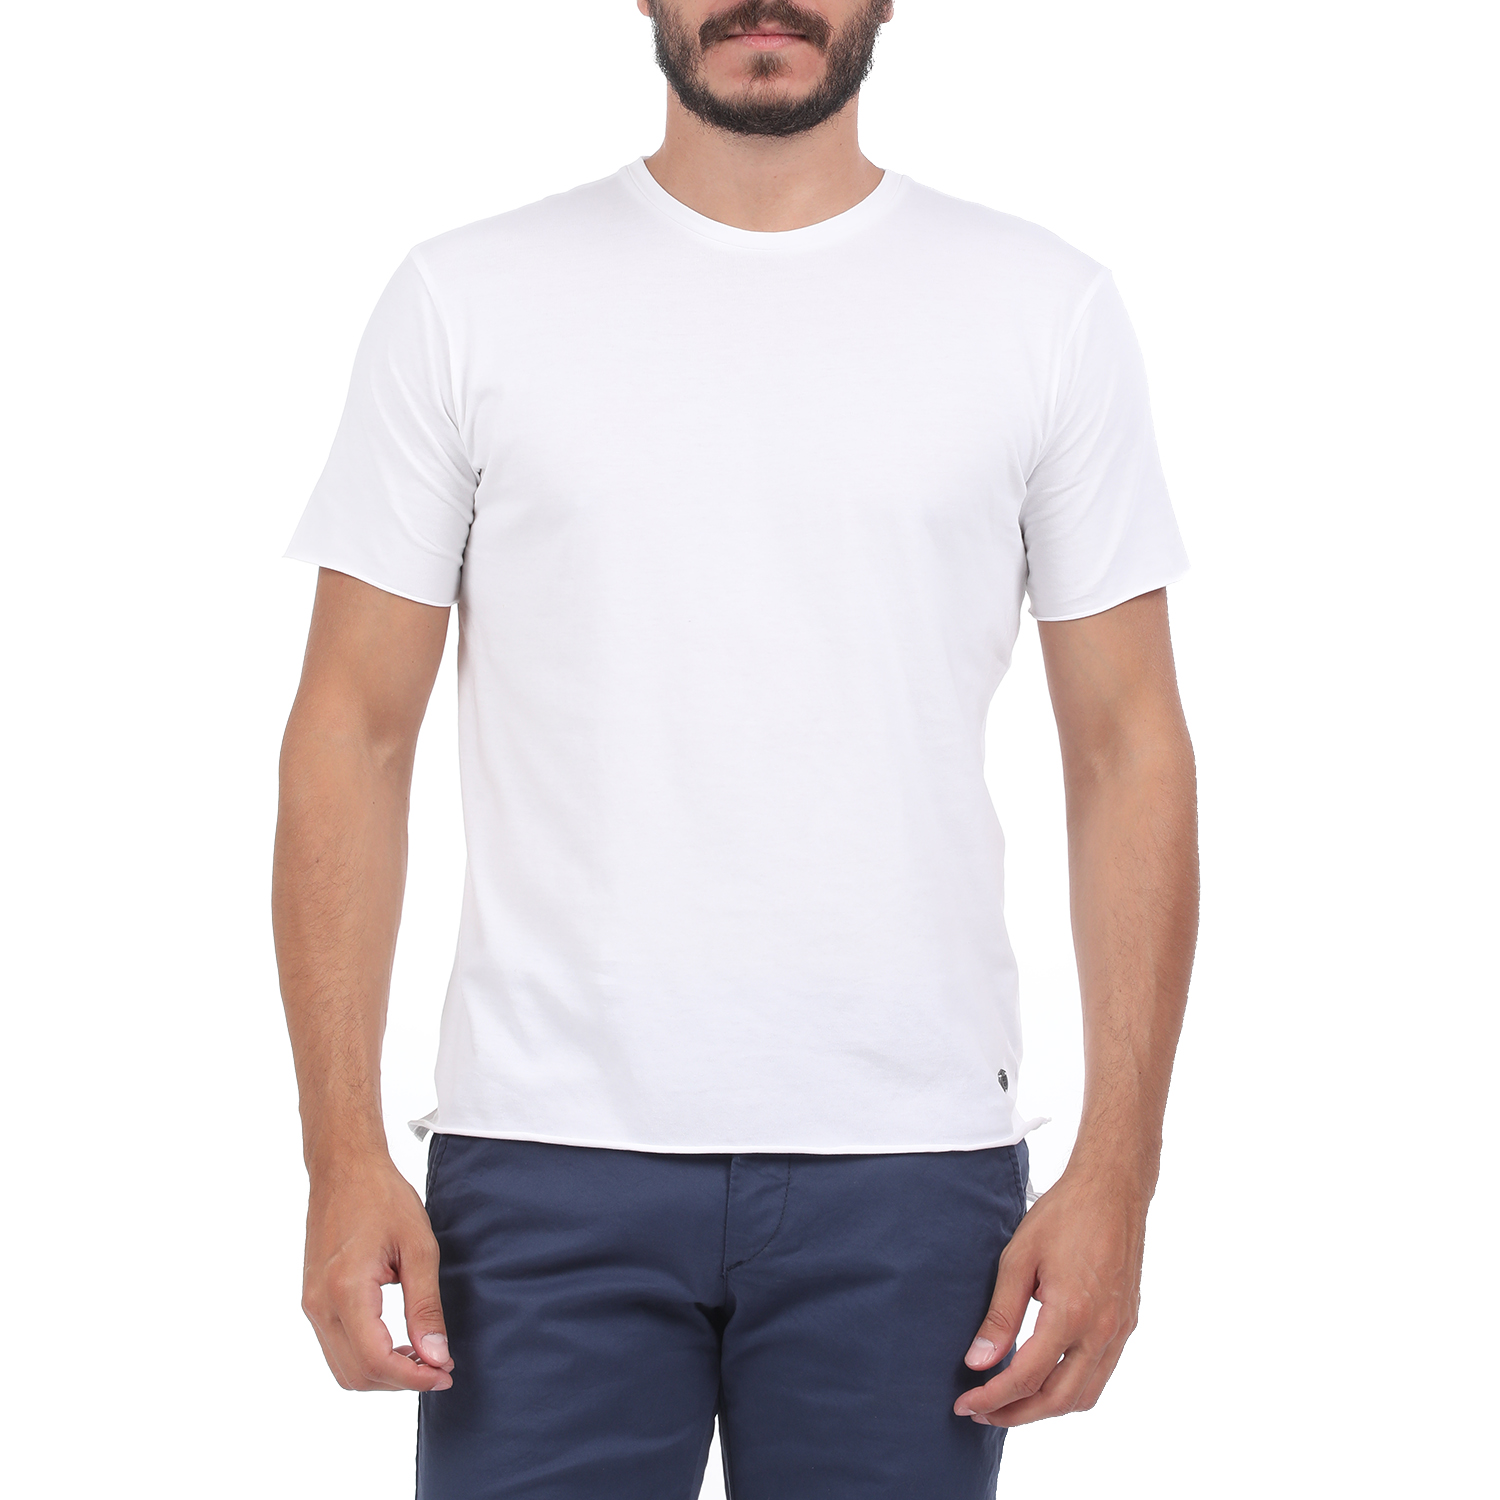 Ανδρικά/Ρούχα/Μπλούζες/Κοντομάνικες GREENWOOD - Ανδρική μπλούζα GREENWOOD εκρού